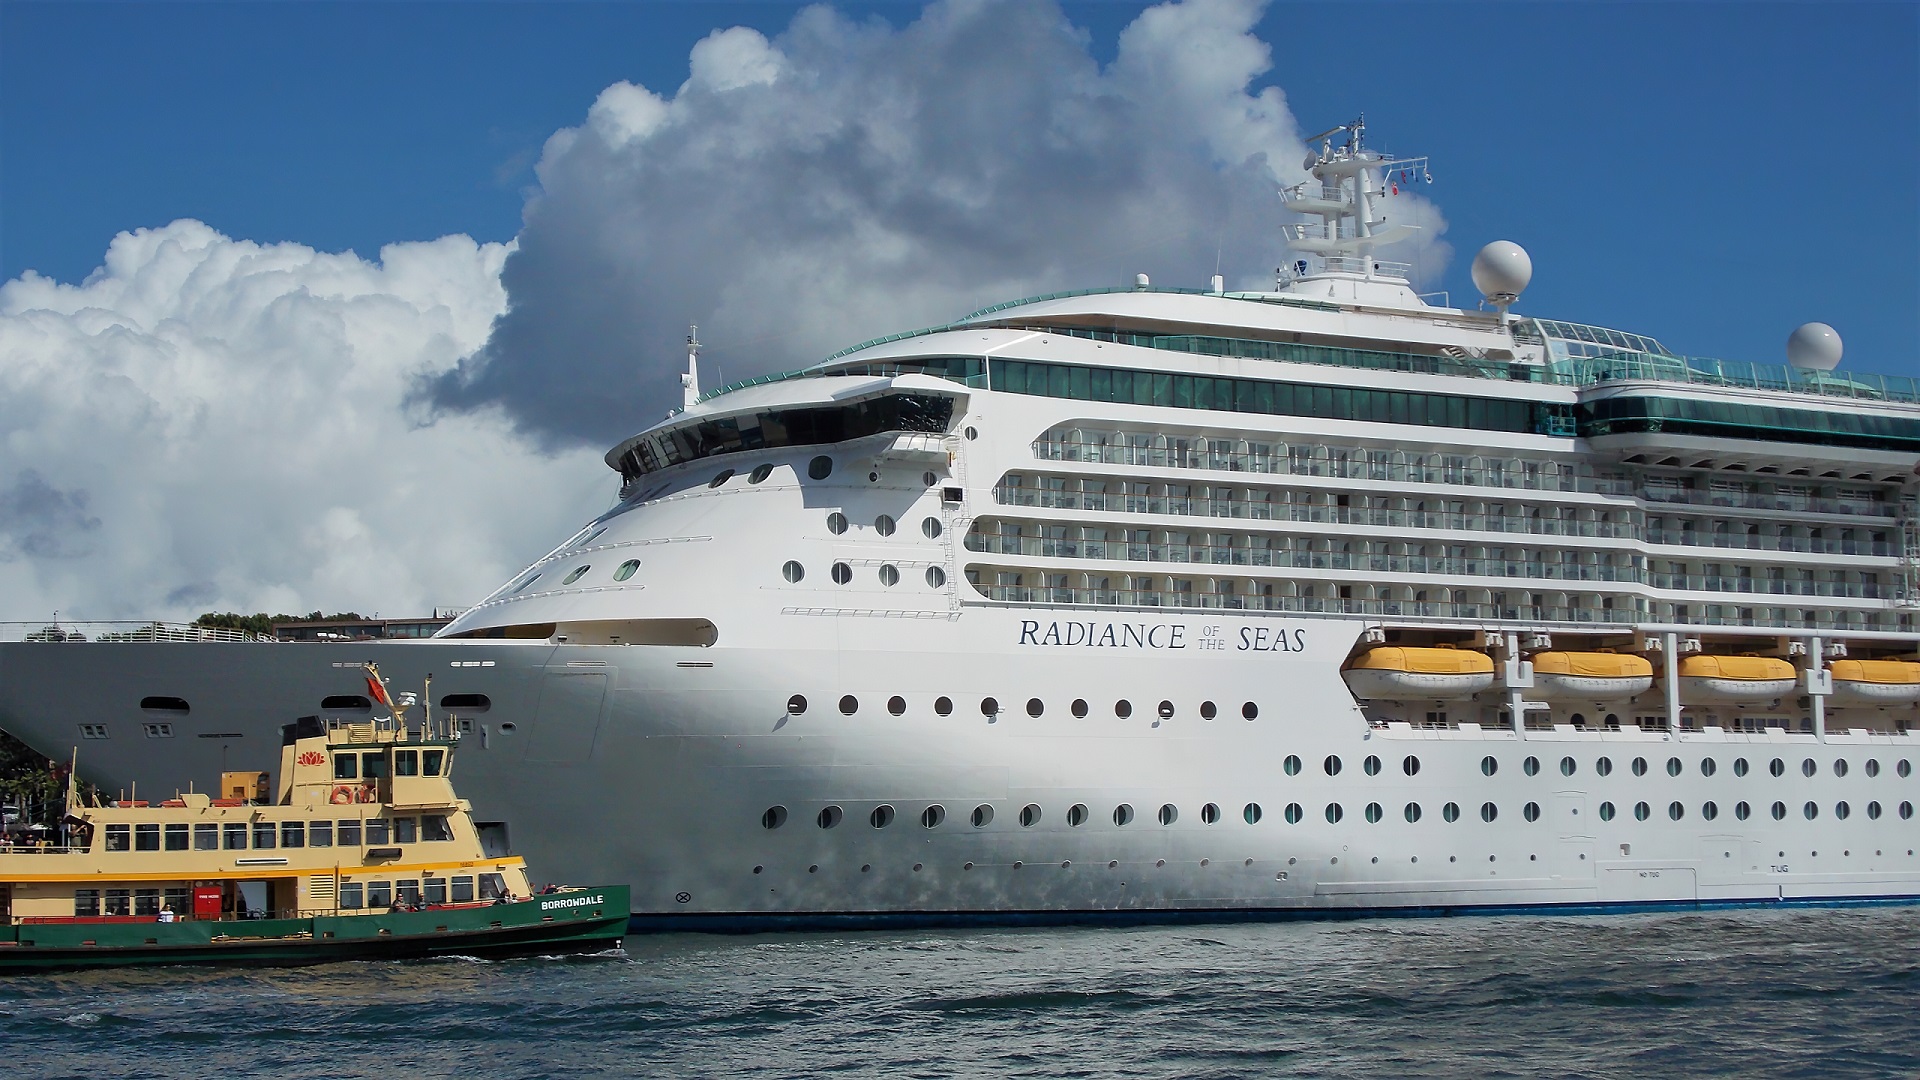 vehicles, radiance of the seas, australia, boat, cruise ship, ferry, harbor, ship, sydney, cruise ships